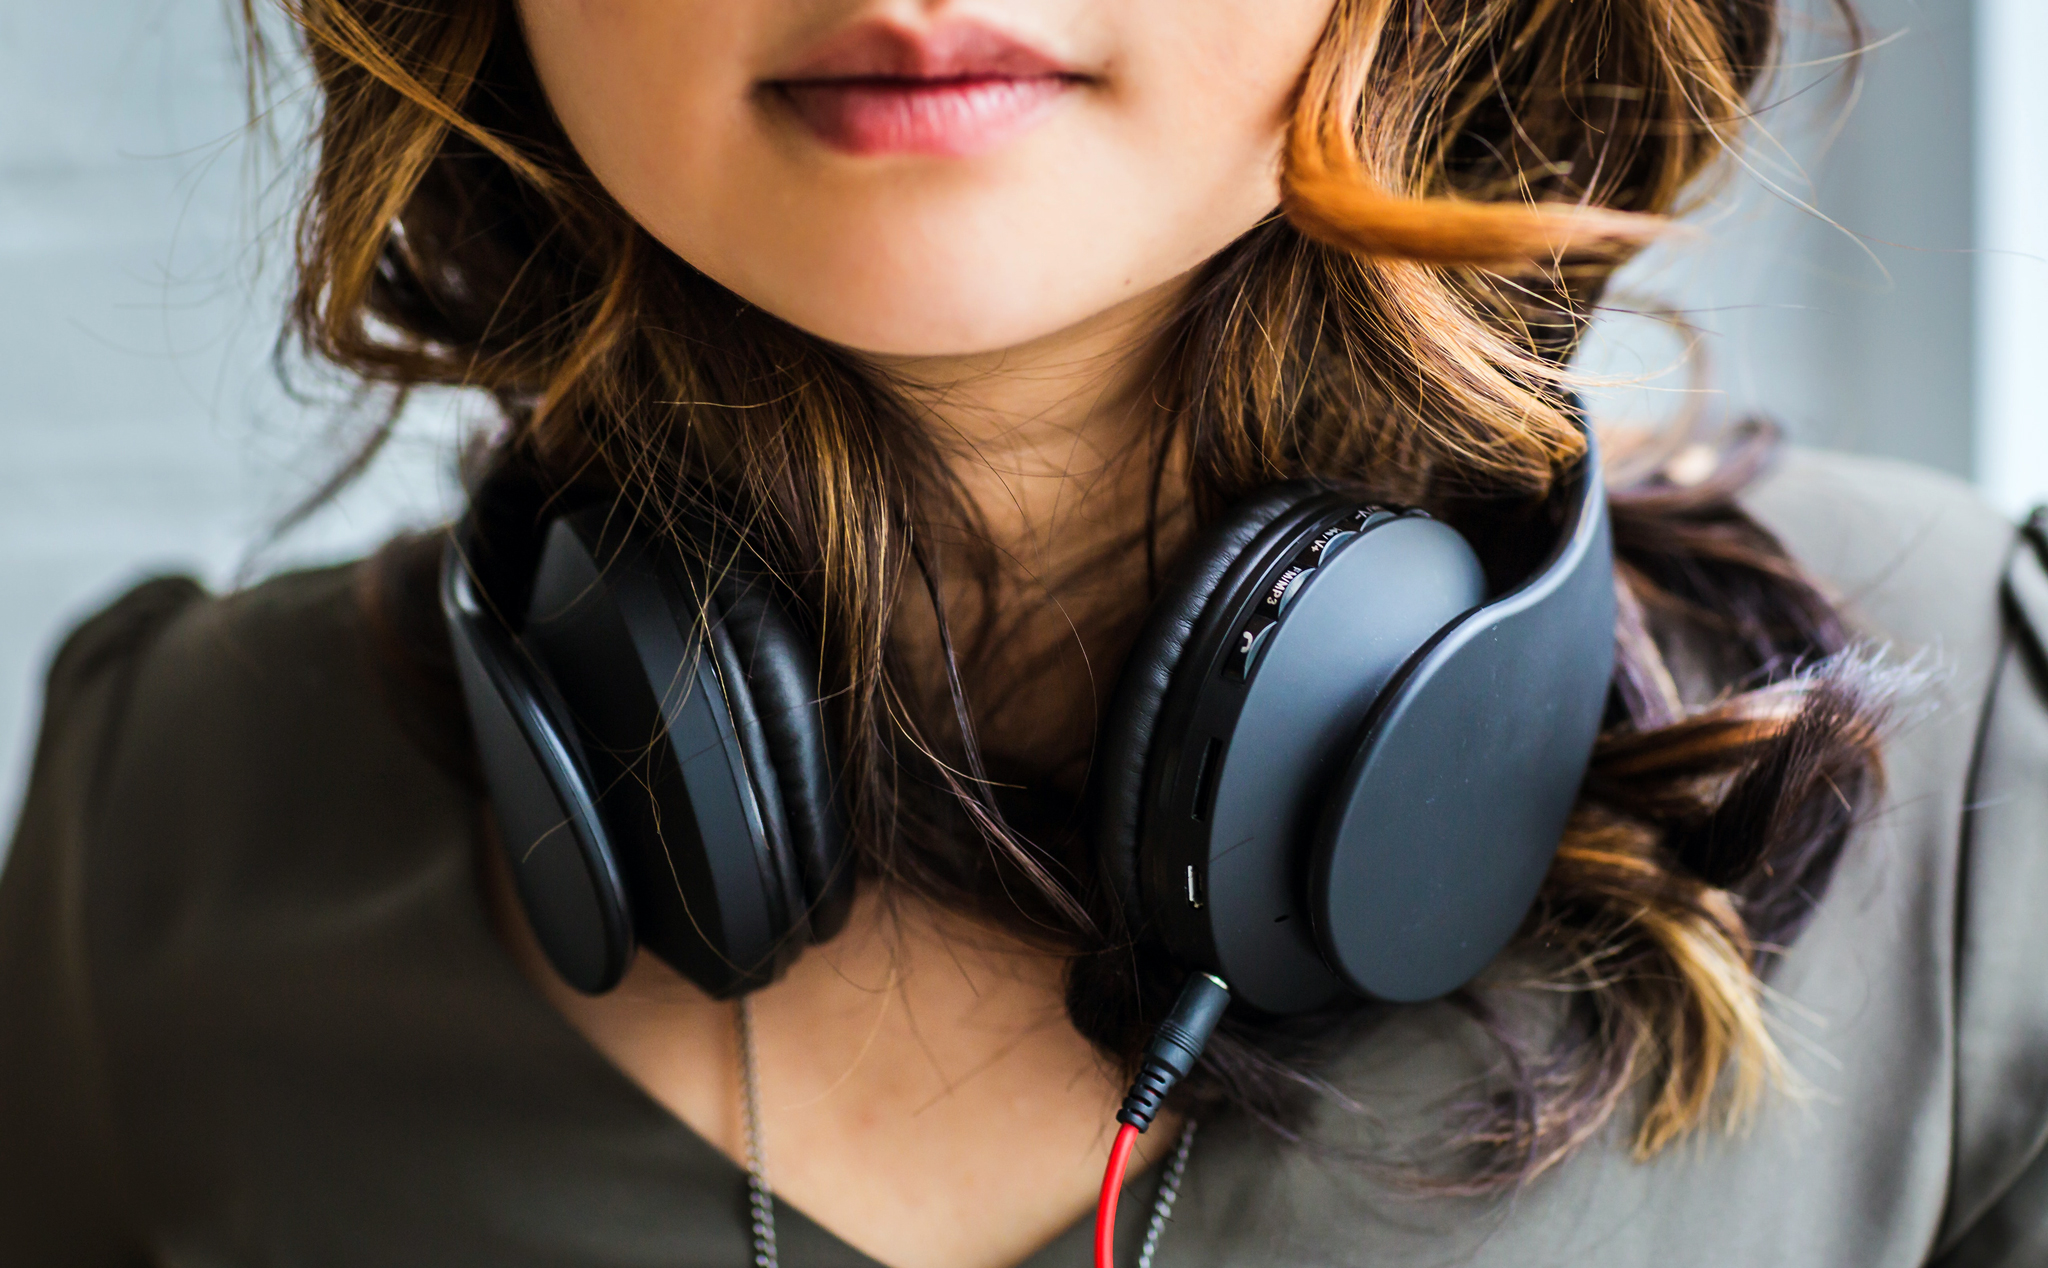 Thống kê 2019: trung bình người ta nghe nhạc 18 giờ mỗi tuần